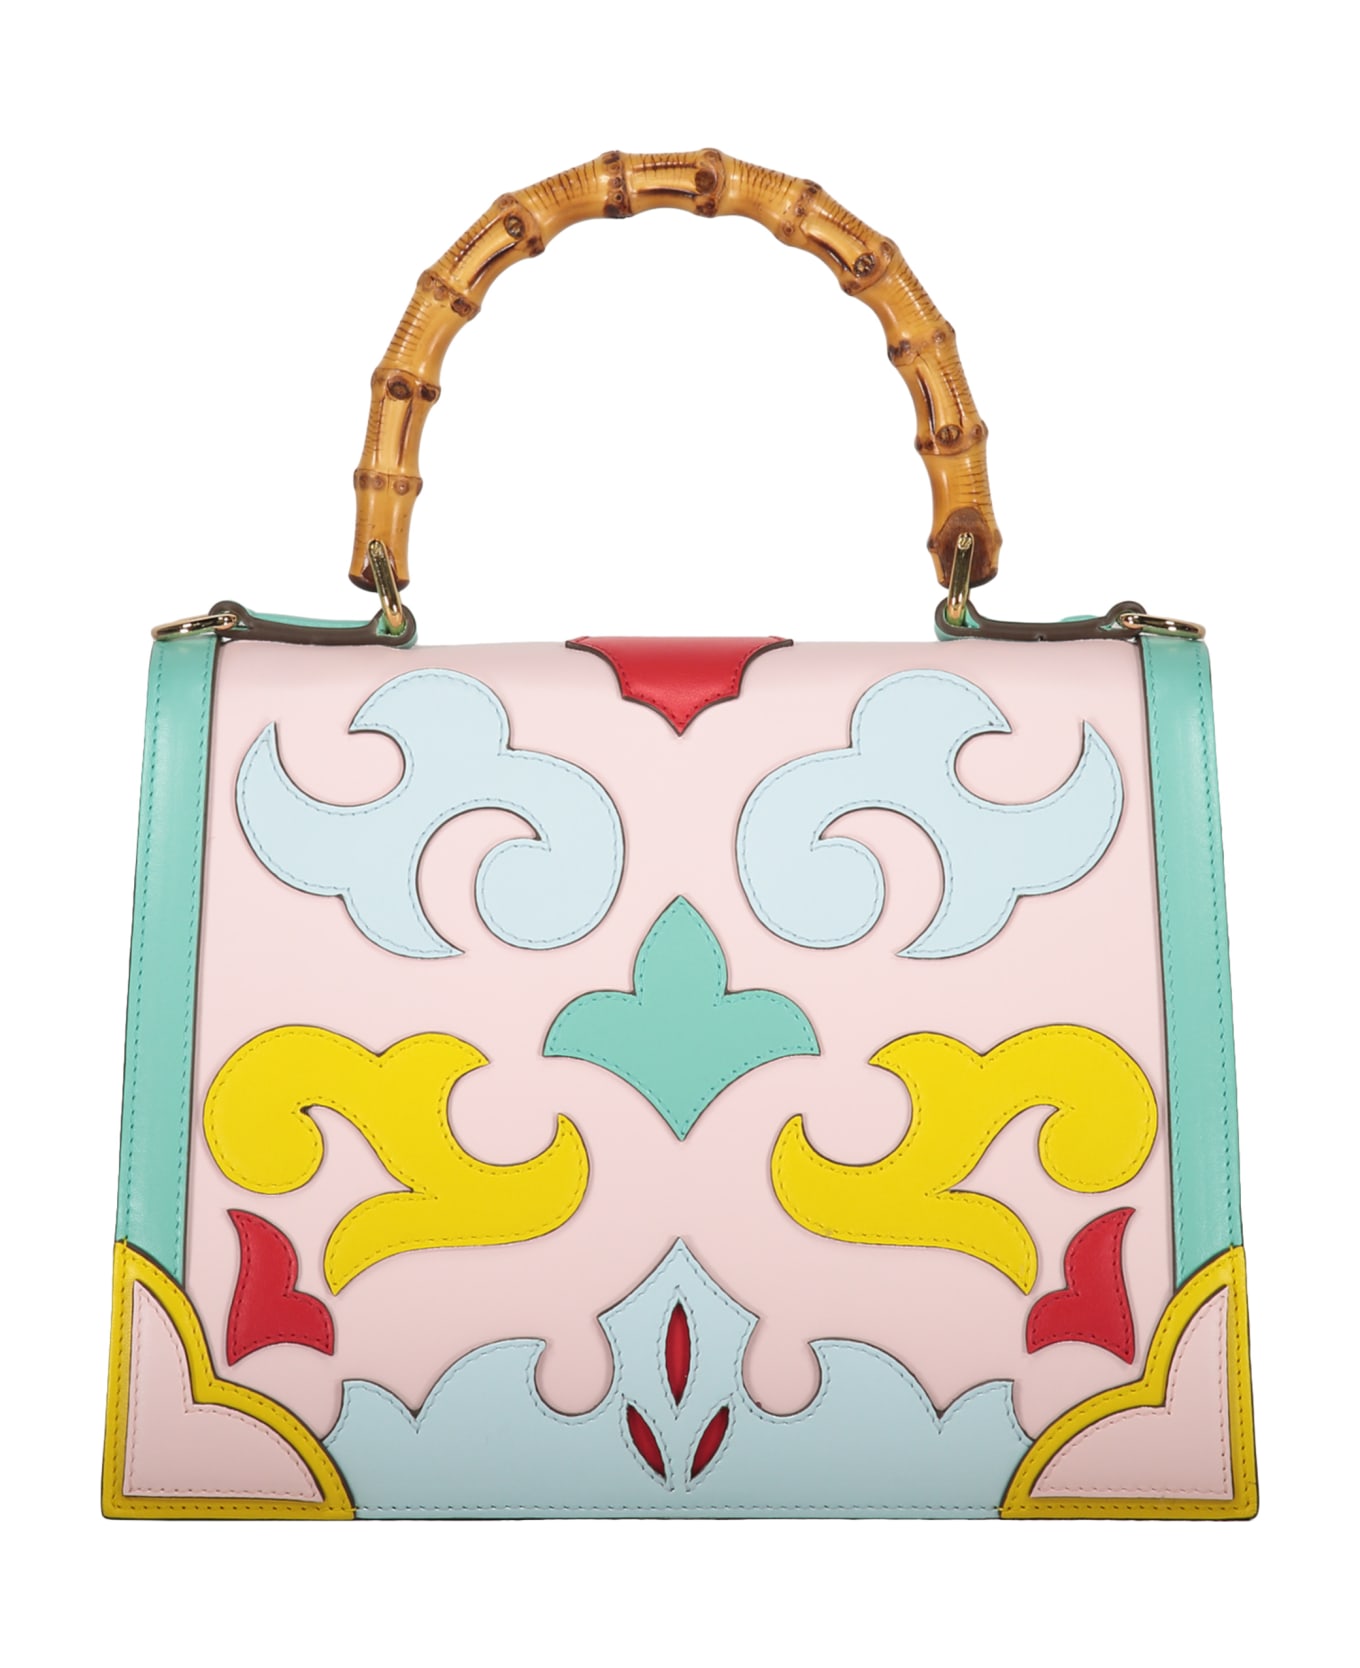 Casablanca Leather Handbag - Multicolor